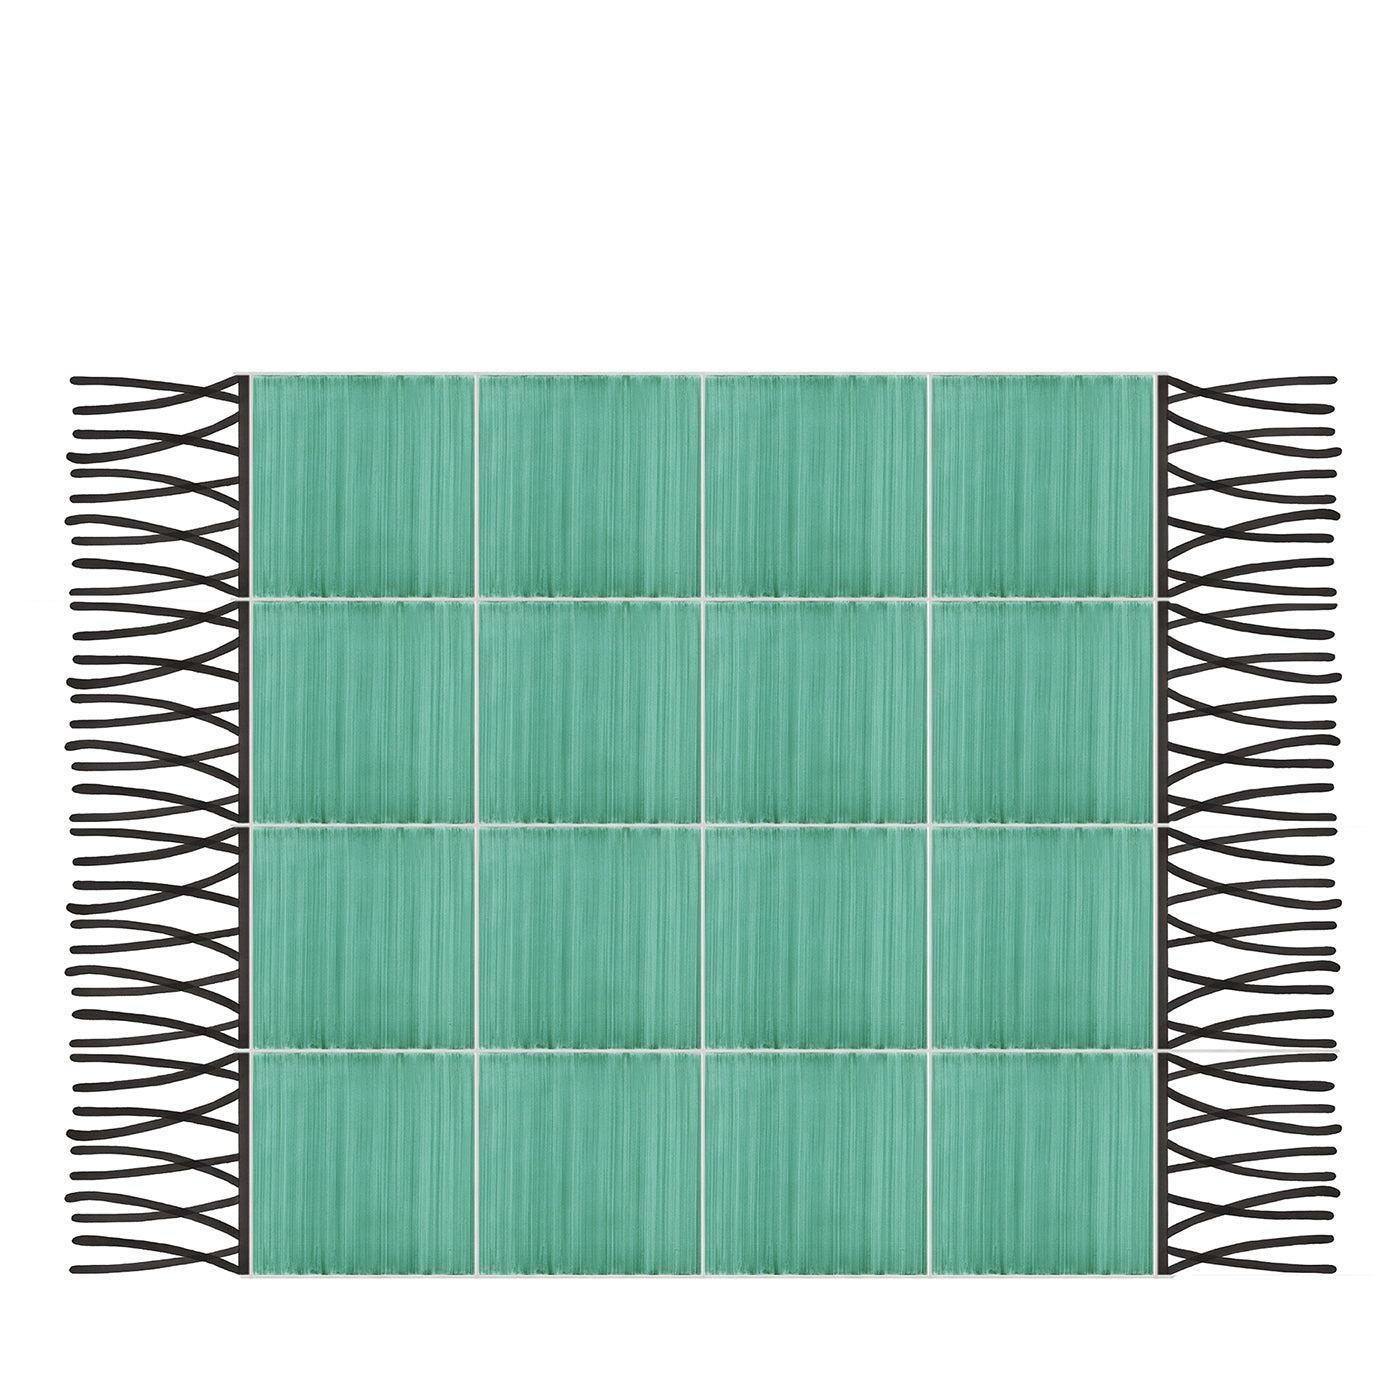 Carpet Total Green Ceramic Composition by Giuliano Andrea dell’Uva 120 X 80 - Main view